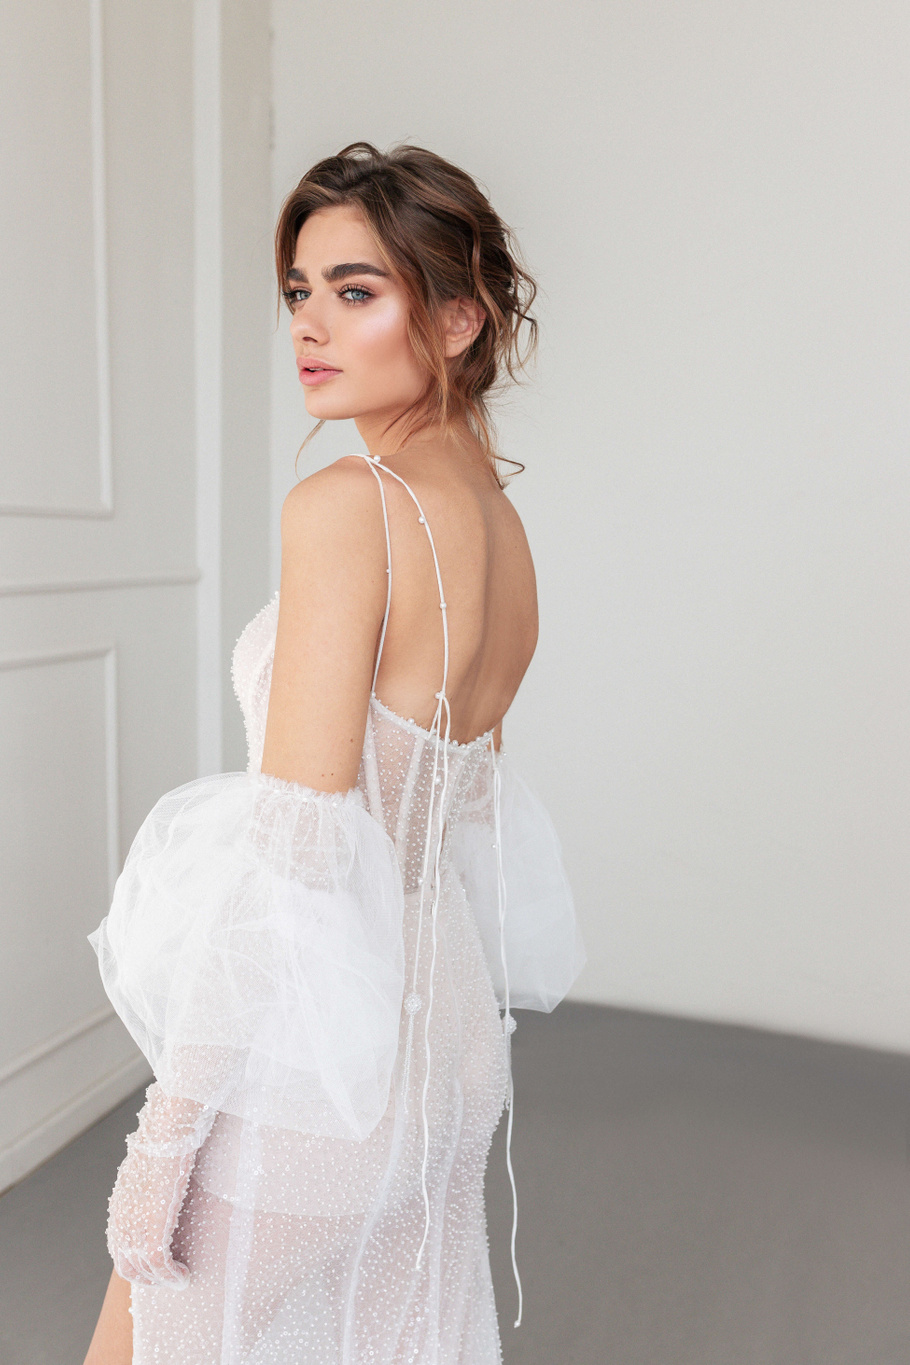 Купить свадебное платье «Бриллианс» Анже Этуаль из коллекции 2020 года в салоне «Мэри Трюфель»